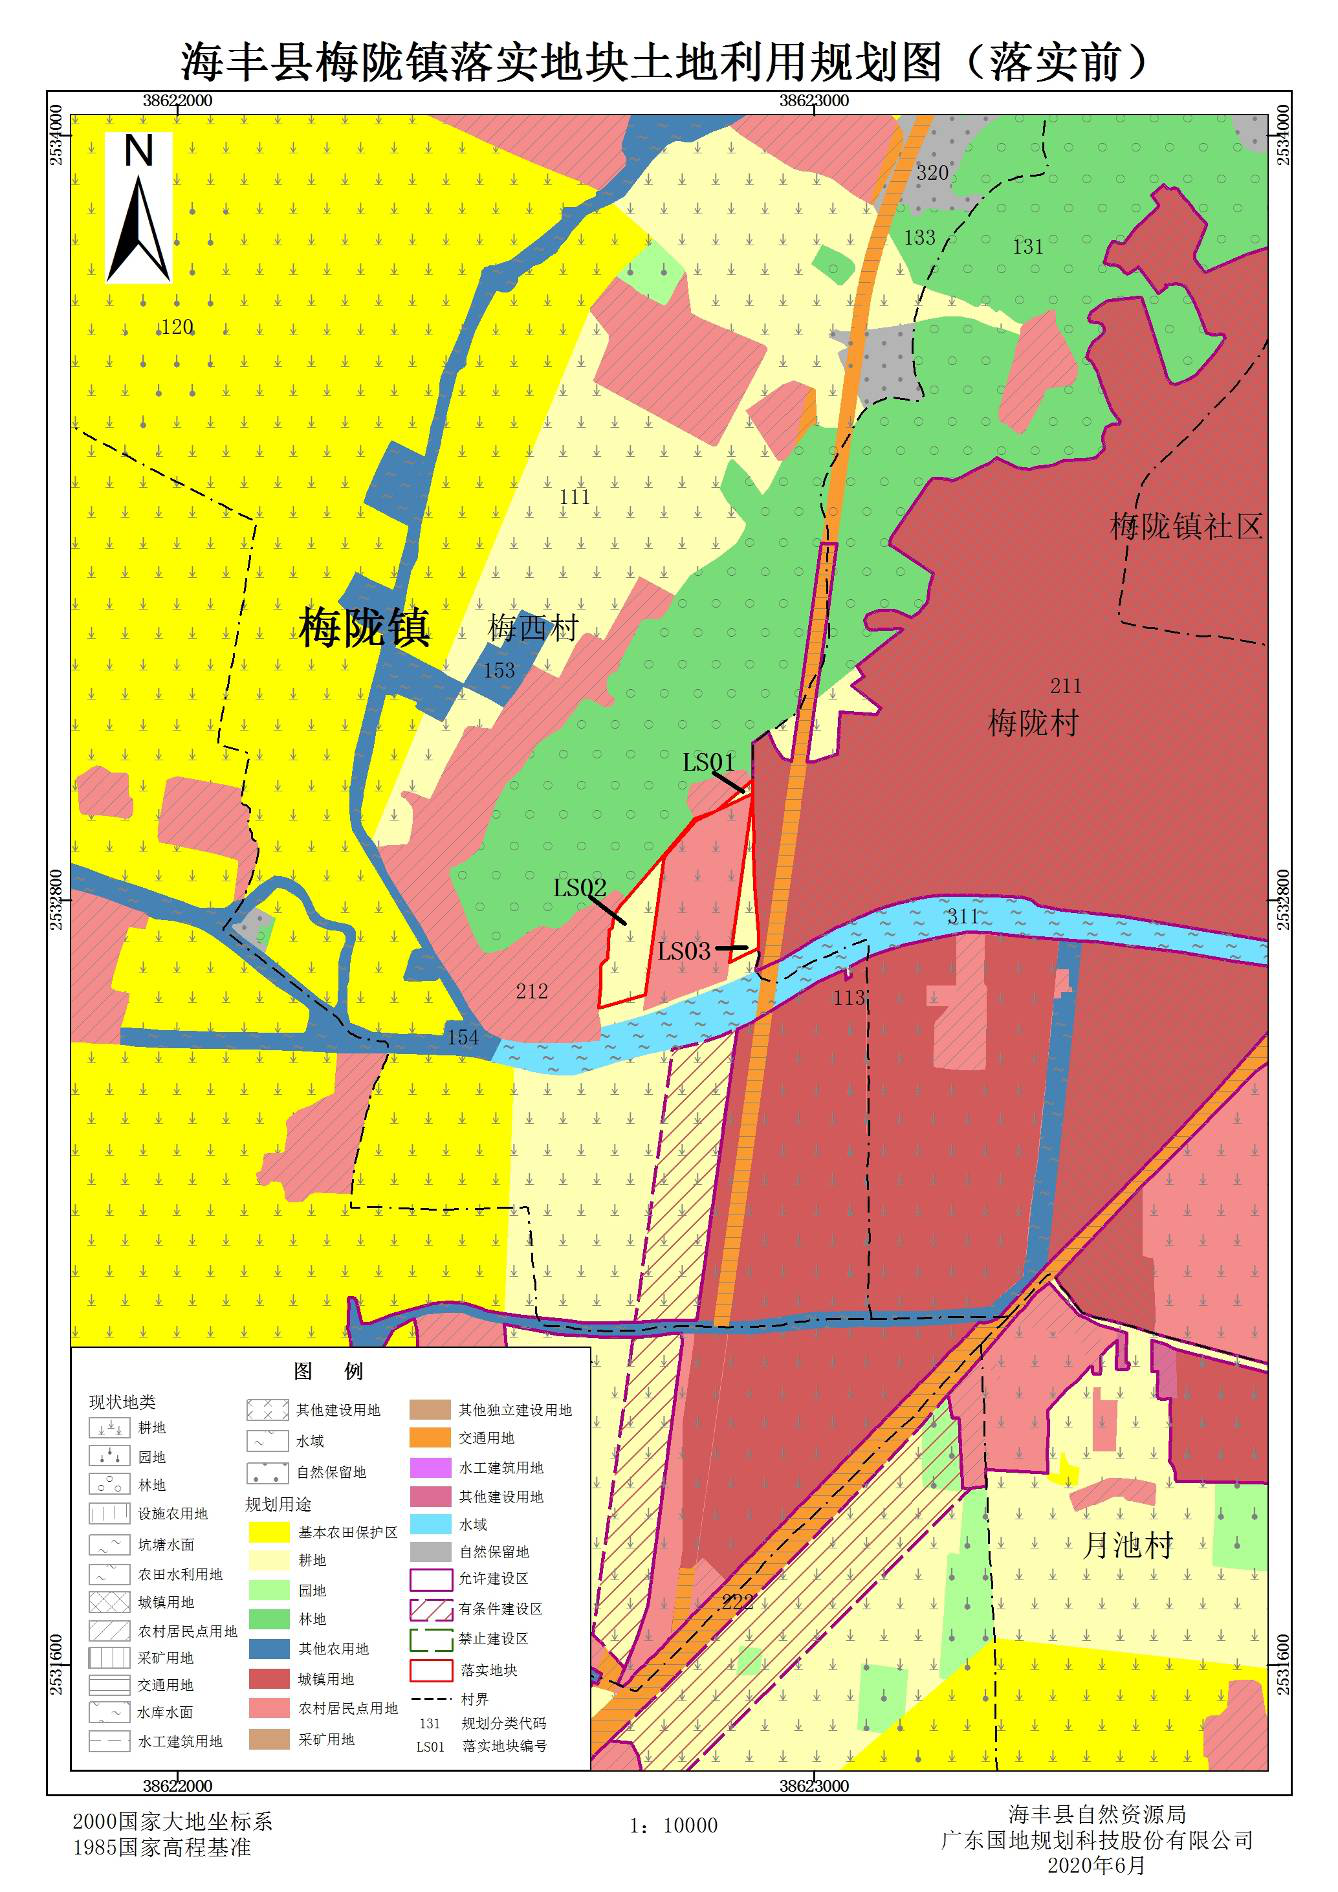 使用审批表(海丰县2012年度第八批次城镇建设用地留用地)》成果的公告